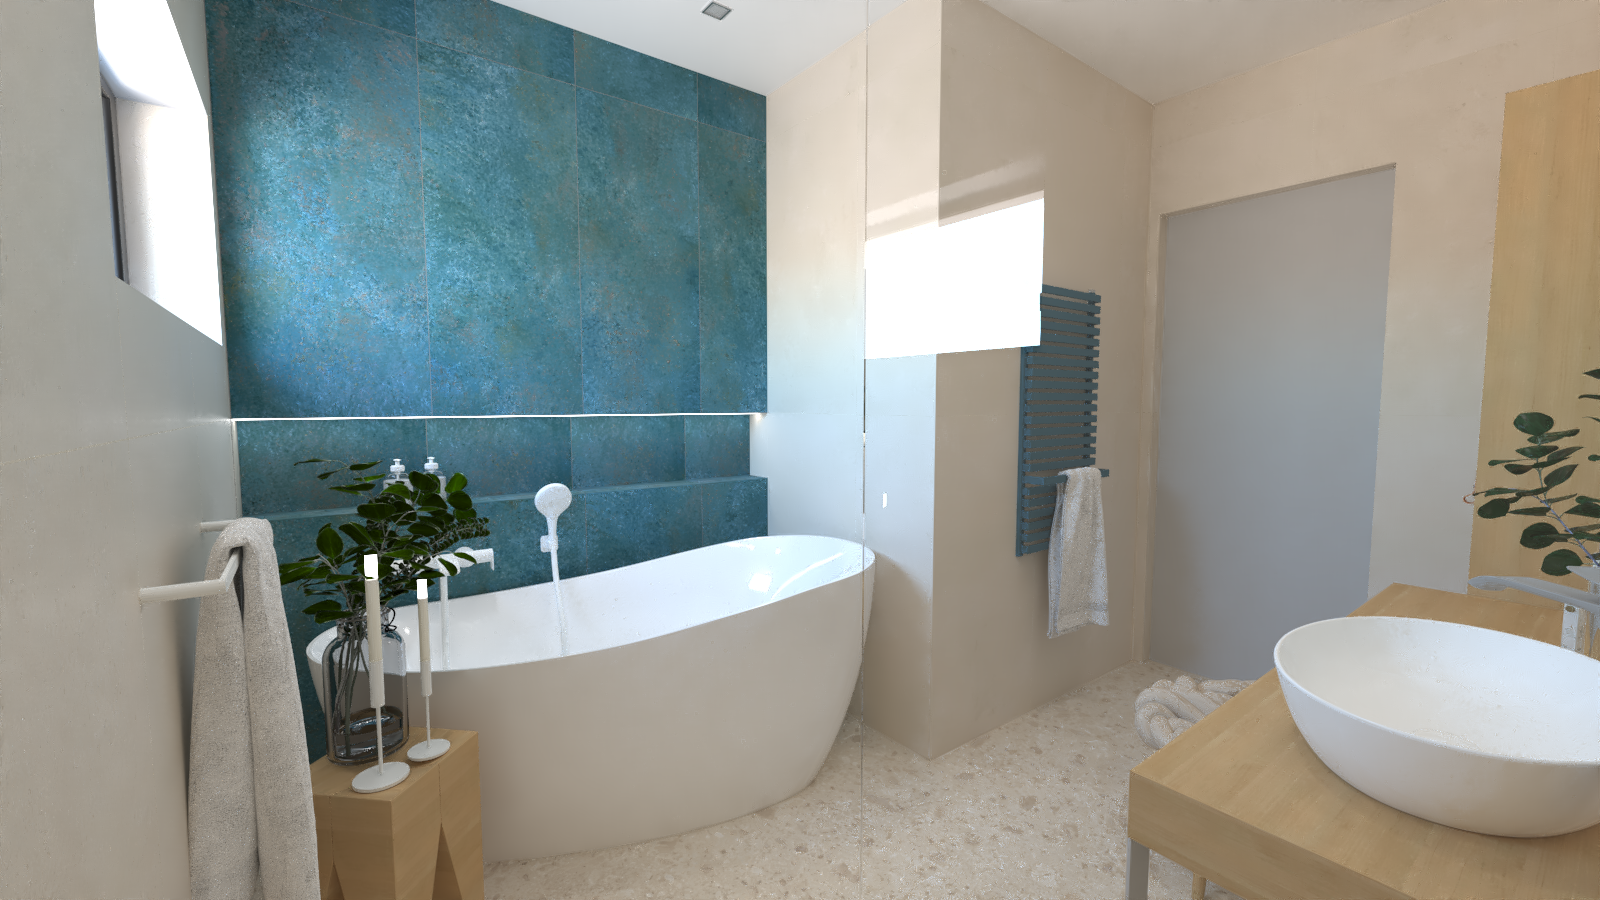 Návrh svěží koupelny s tyrkysovým akcentem – obklady v imitaci betonu, kamene i kovu, volně stojící vana a designové doplňky 0